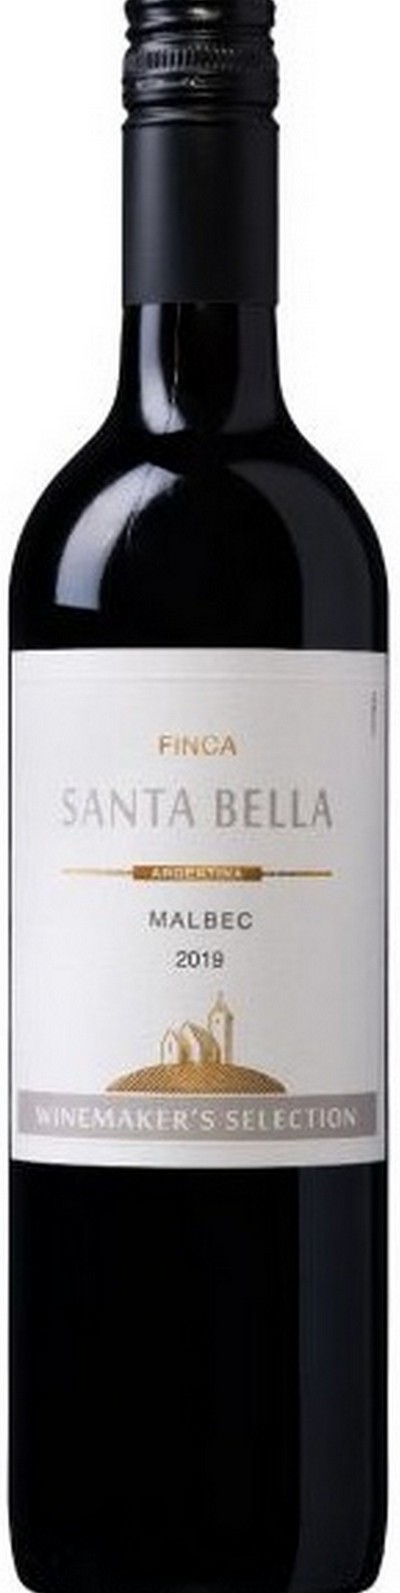 finca-santa-bella-malbec-argentina-2019